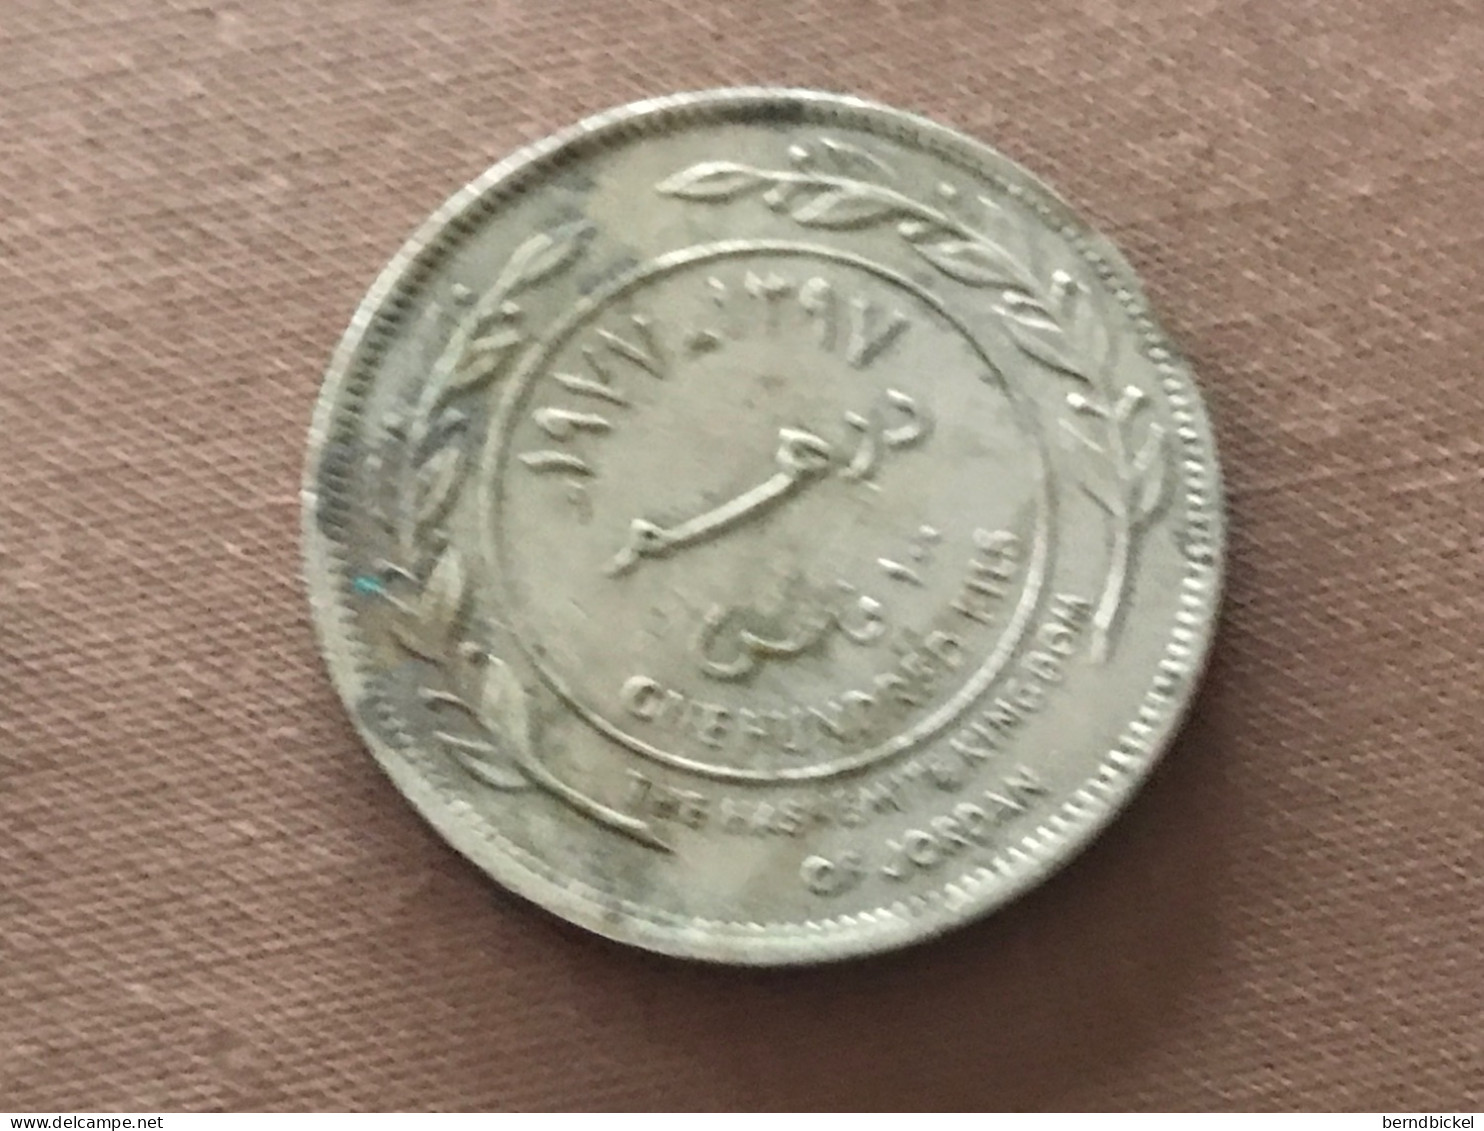 Münze Münzen Umlaufmünze Jordanien 100 Fils 1977 - Jordania